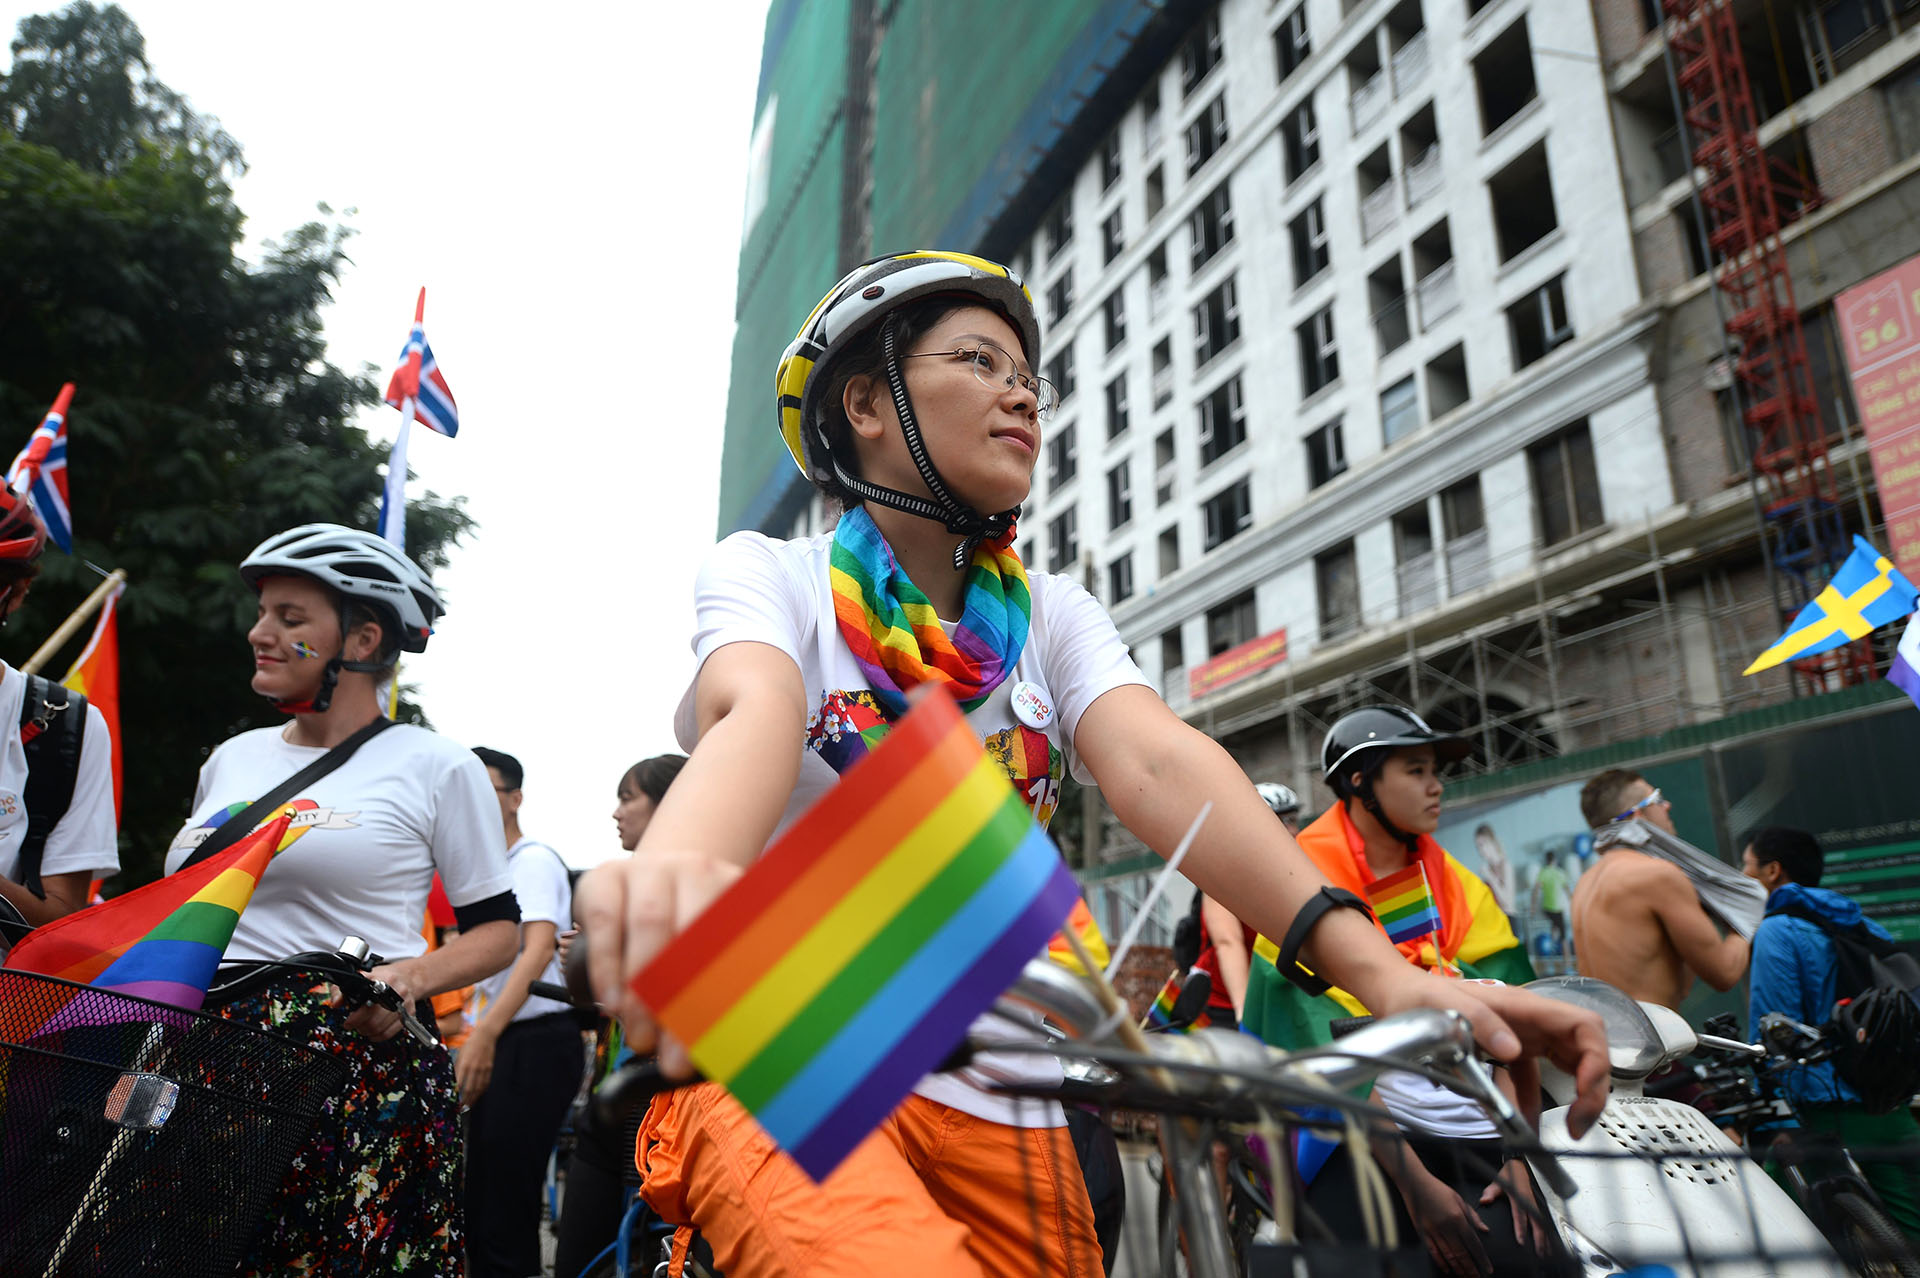 Un grupo de personas montó bicicletas durante el desfile por los derechos de los gays en Hanoi, Vietnam, el 11 de noviembre de 2018 